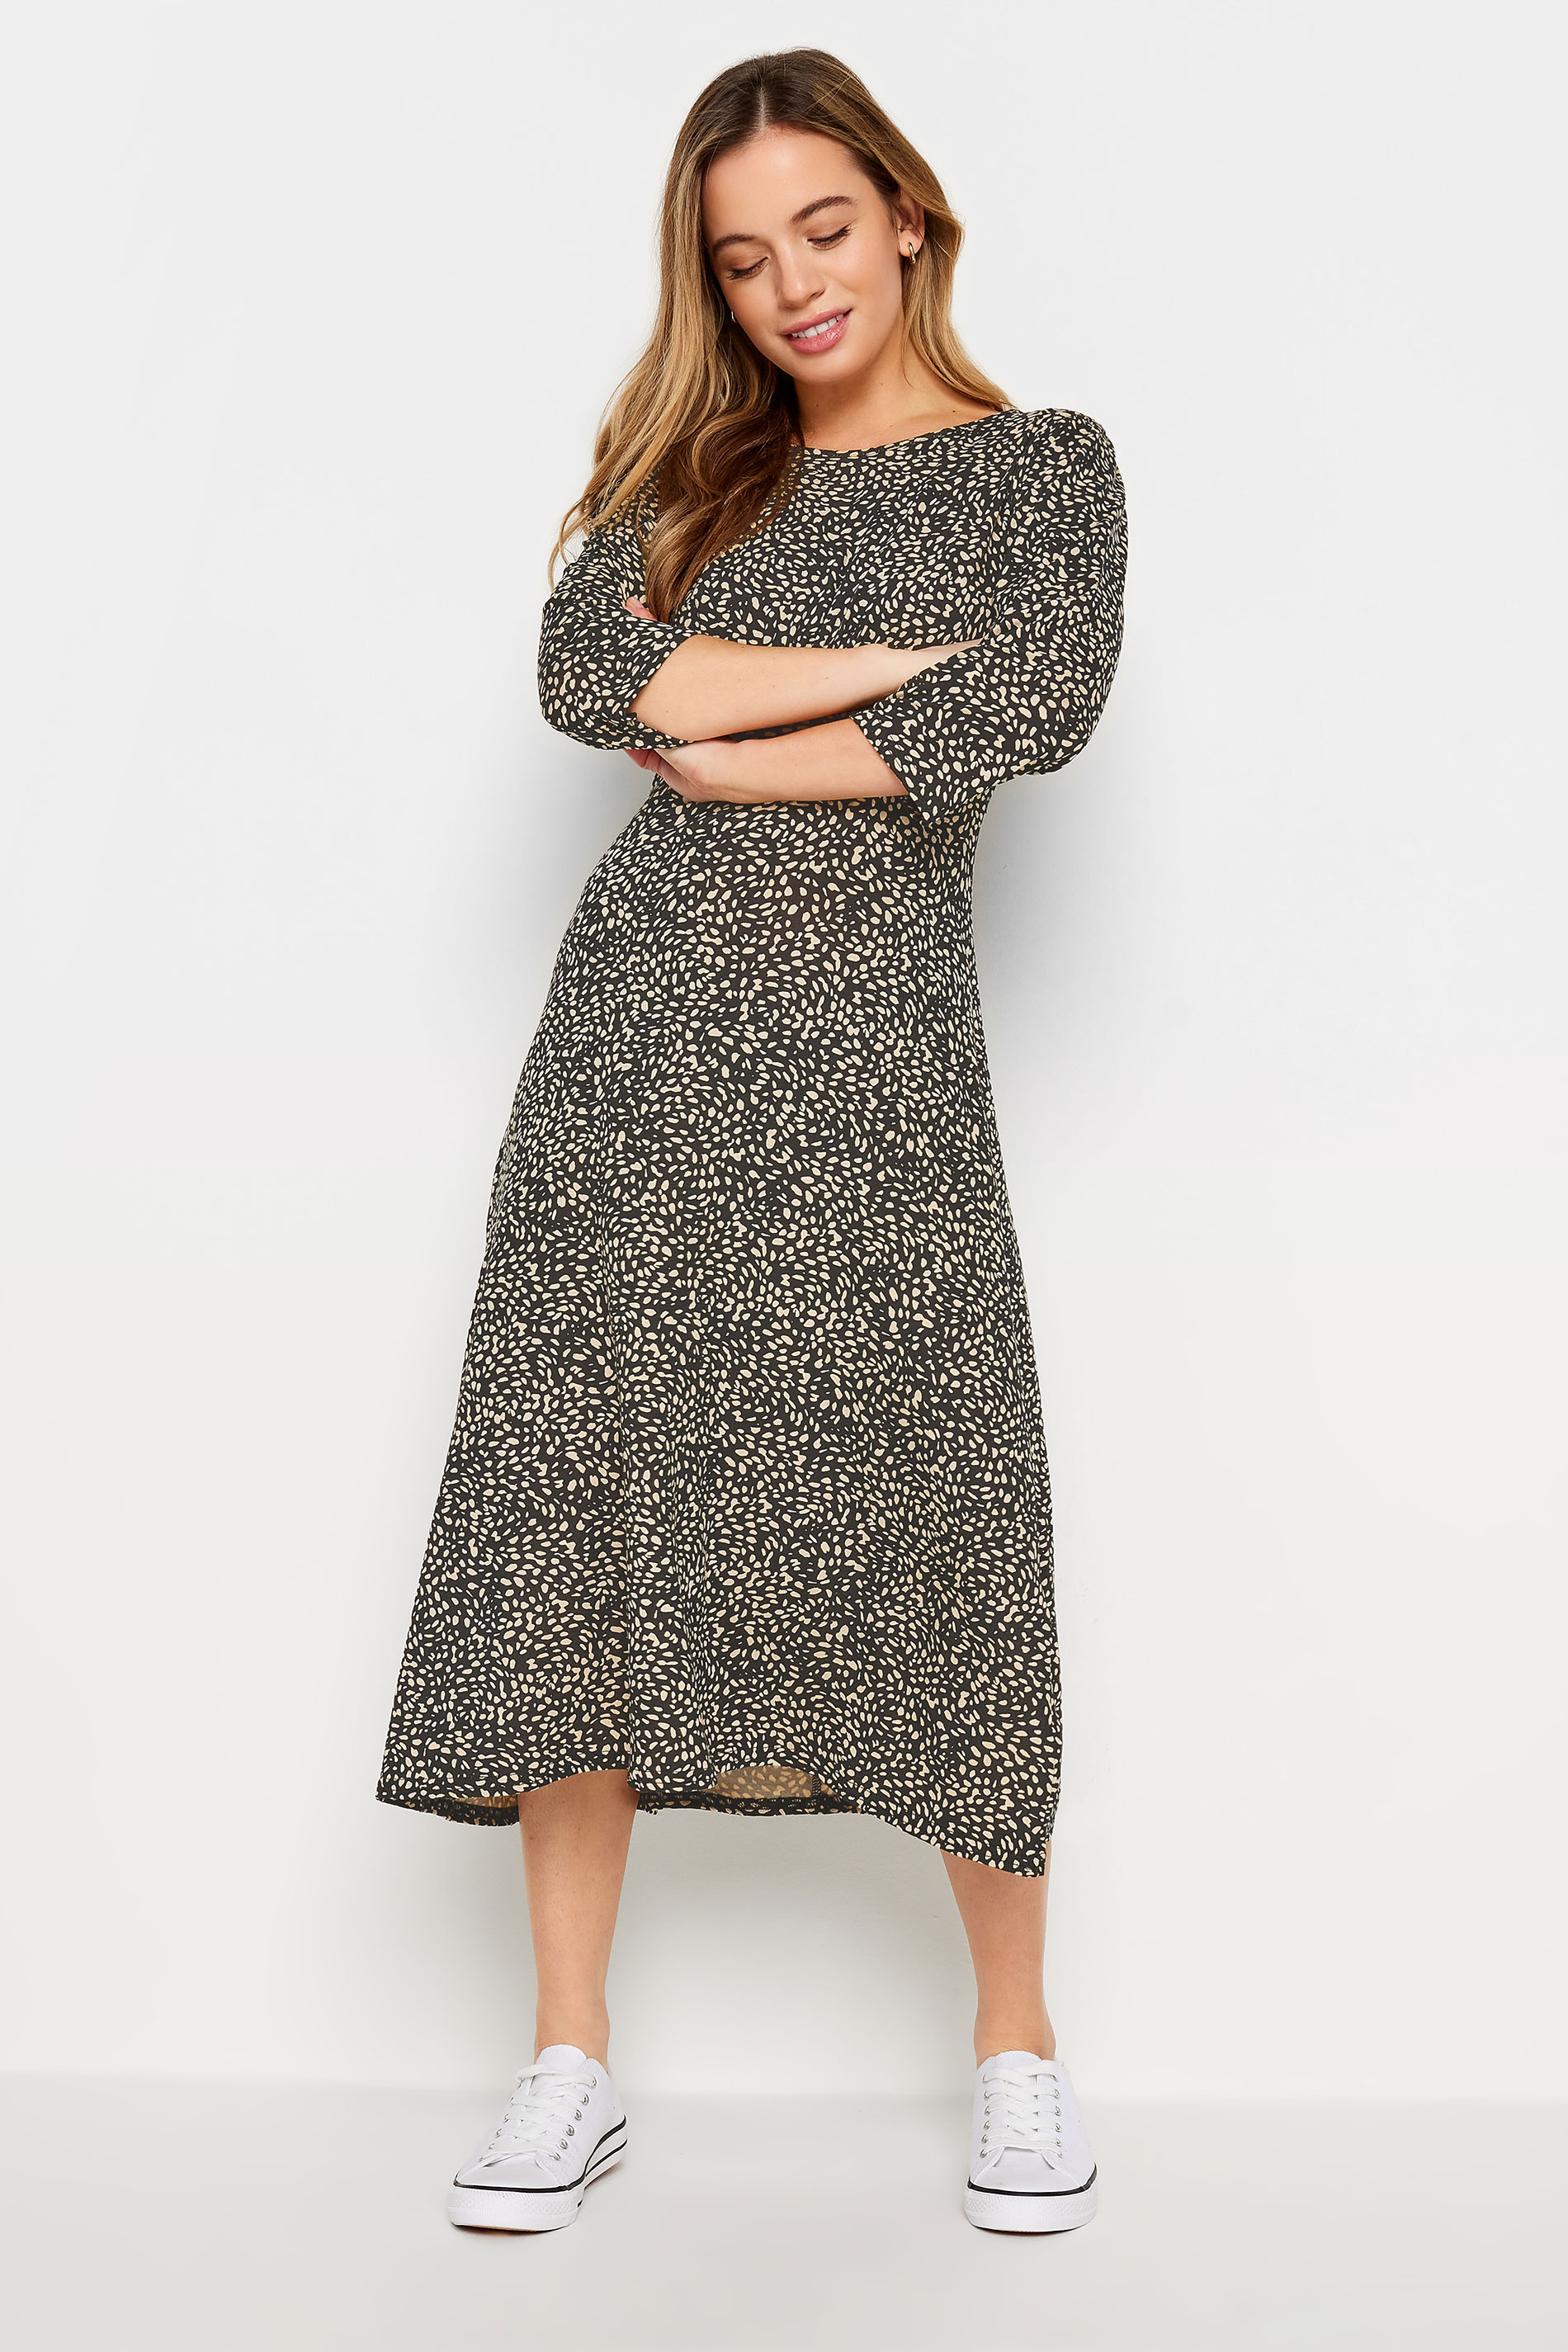 M&Co Petite Black Spot Print Midi Dress | M&Co 2